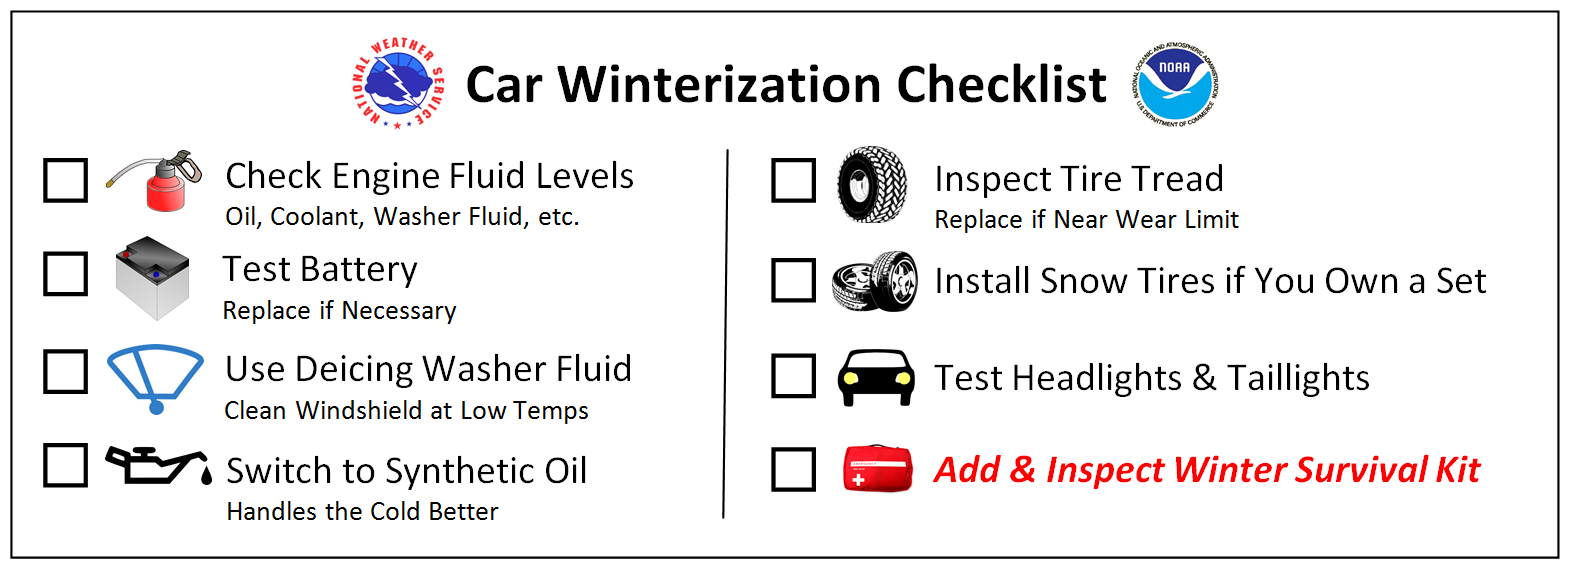 Car Winter Survival Kit Checklist